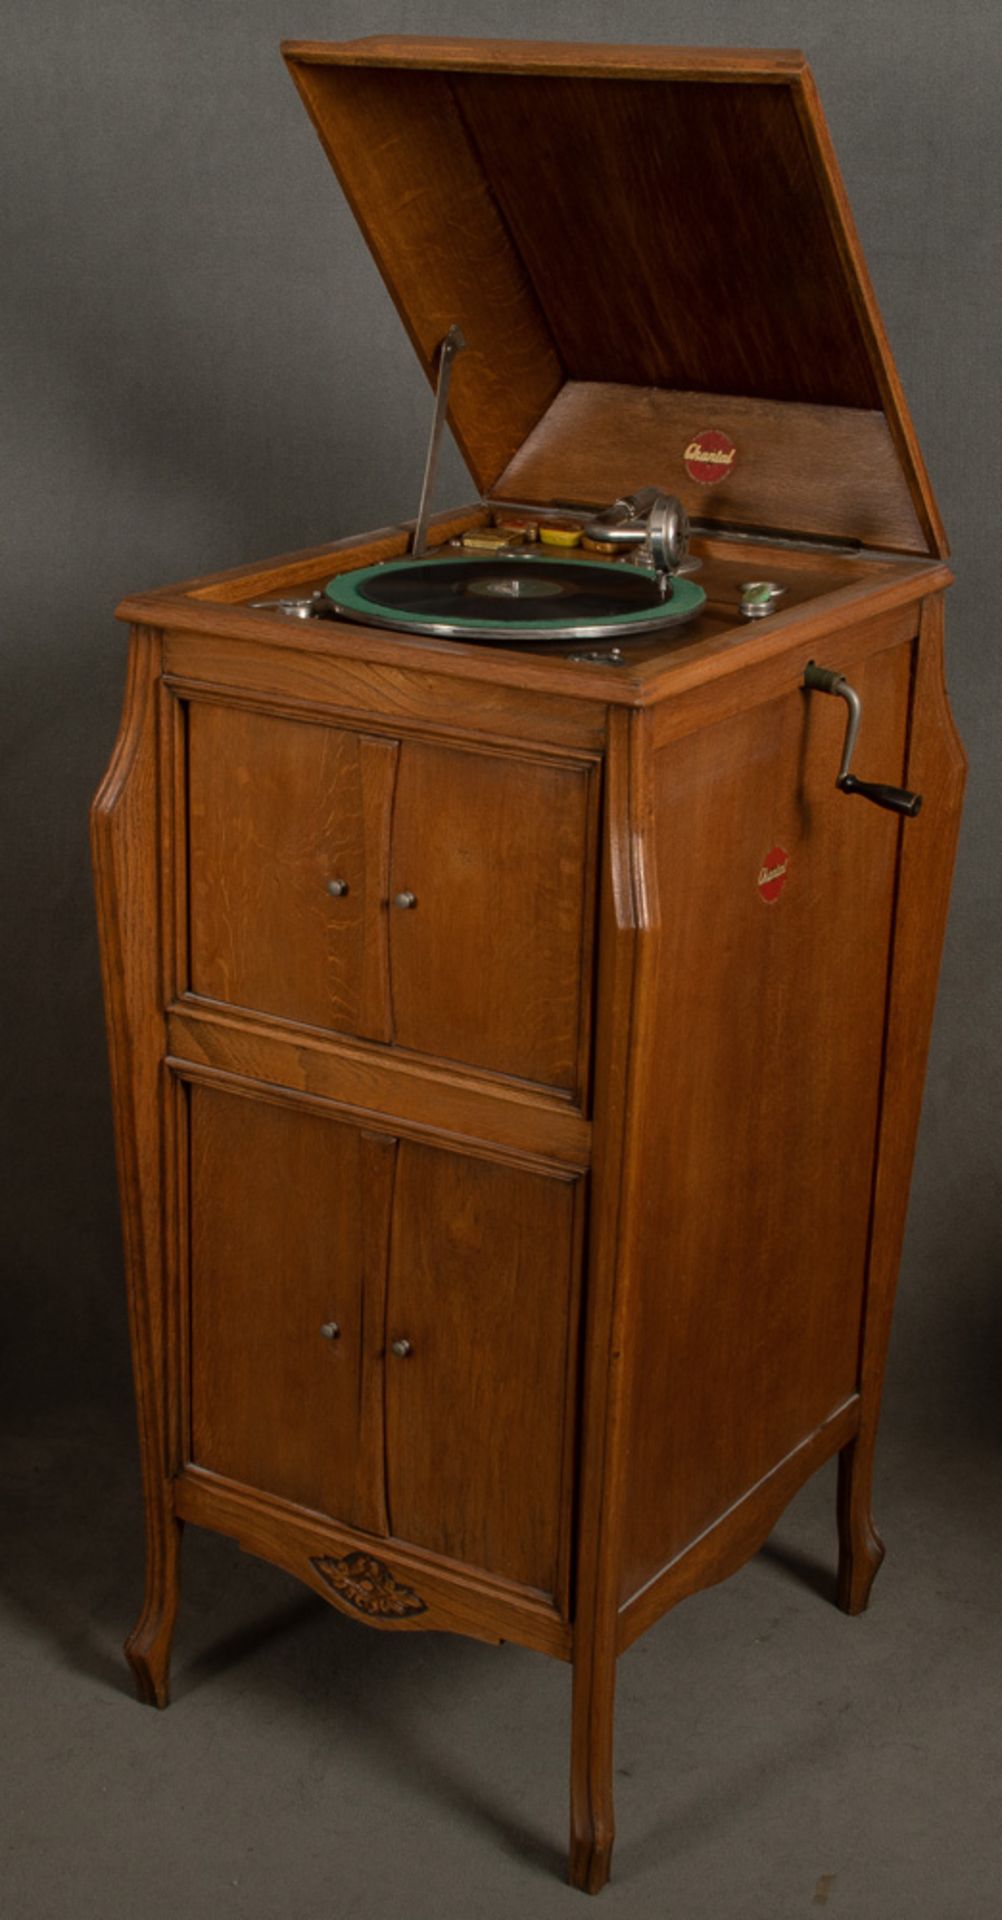 Jugendstil-Grammophonschrank. Chantal, Belgien um 1900. Massiv Eiche, viertürige Front, dazu